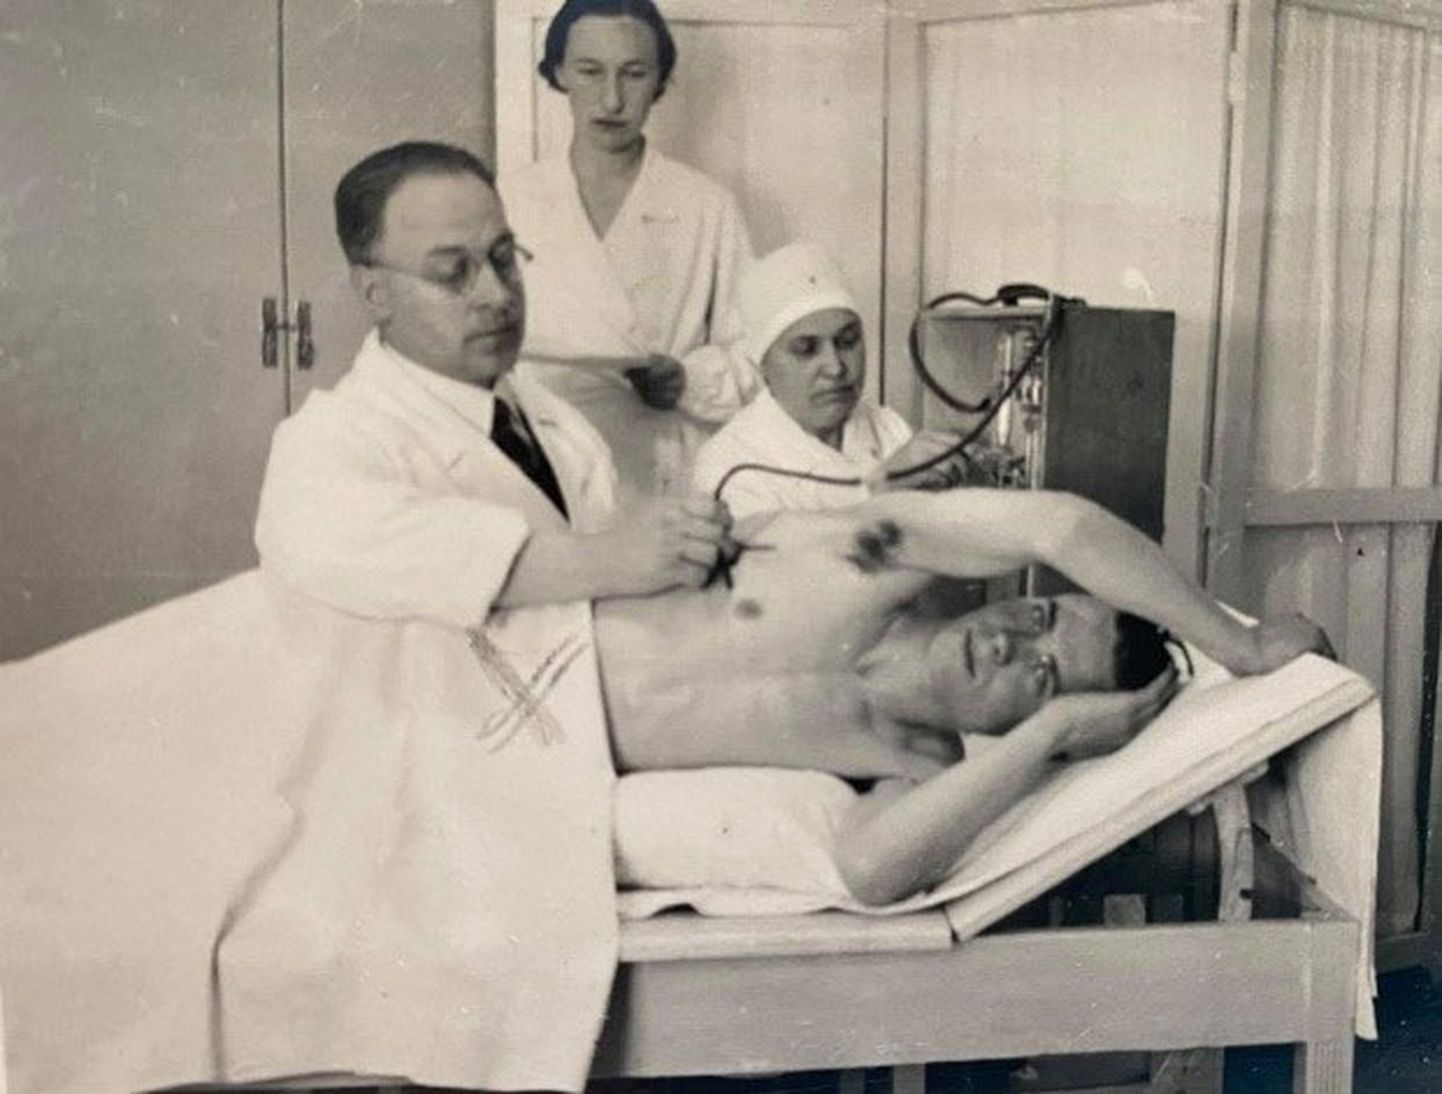 J. Ādamsons darbā. Albumā “L.S.Kr. Cēsu sanatorija 1918–1938”. viņš redzams vairākās fotogrāfijās, gan darbā (attēlā), gan atpūtā. Cēsis, 1938. gads